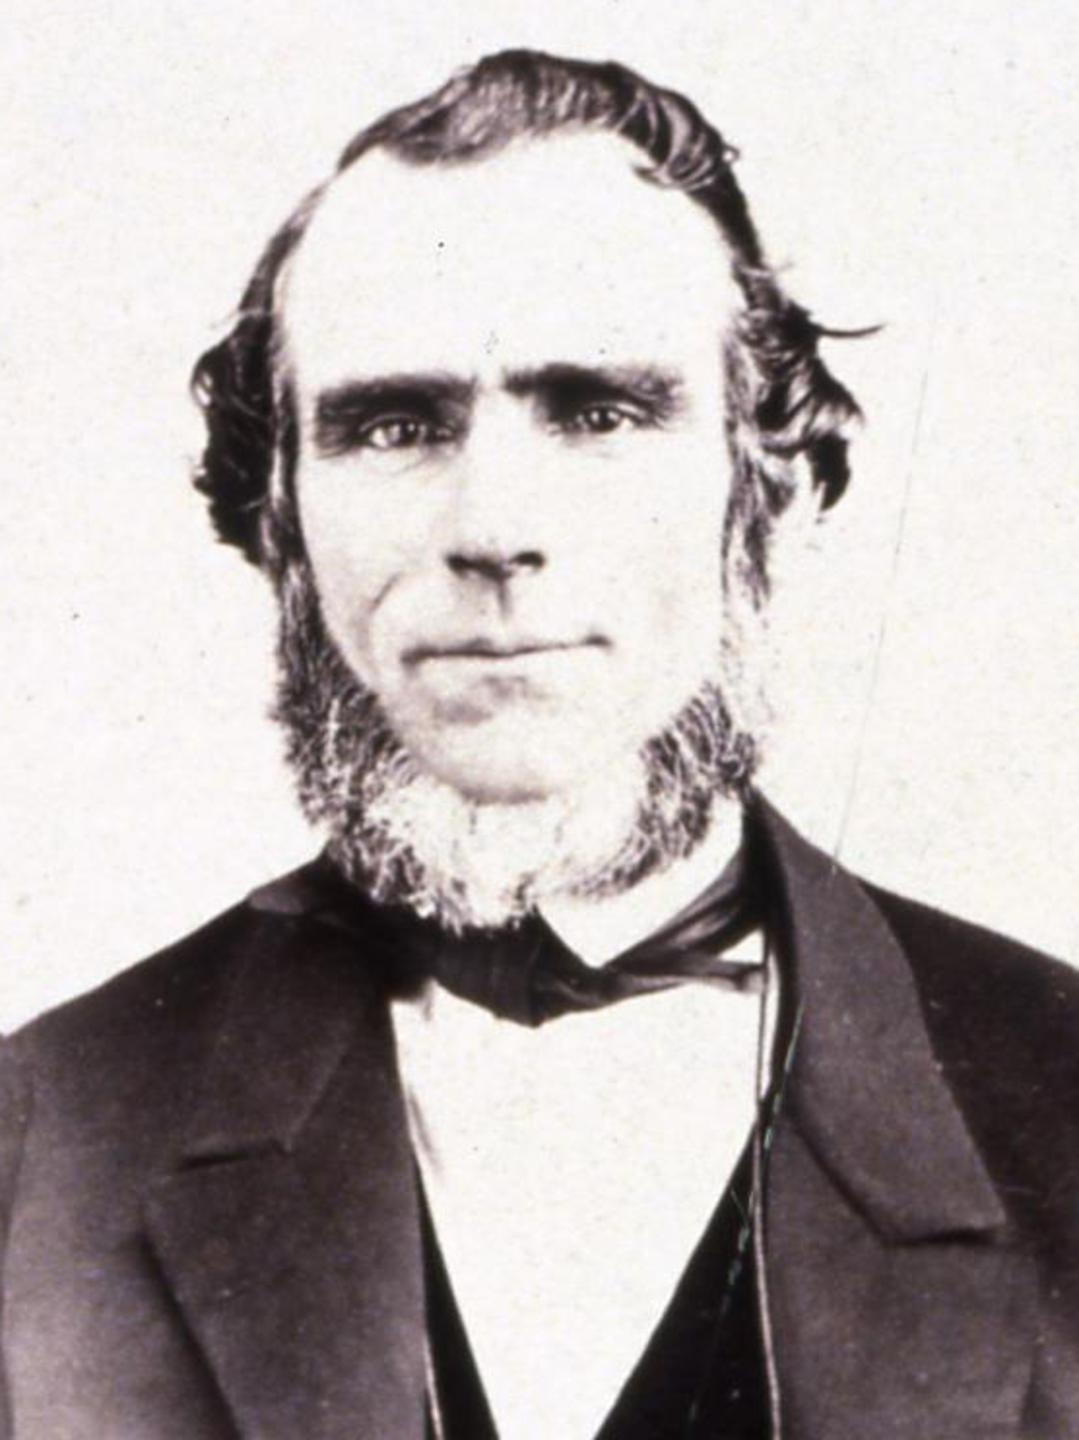 James Smithies (1807 - 1879) Profile